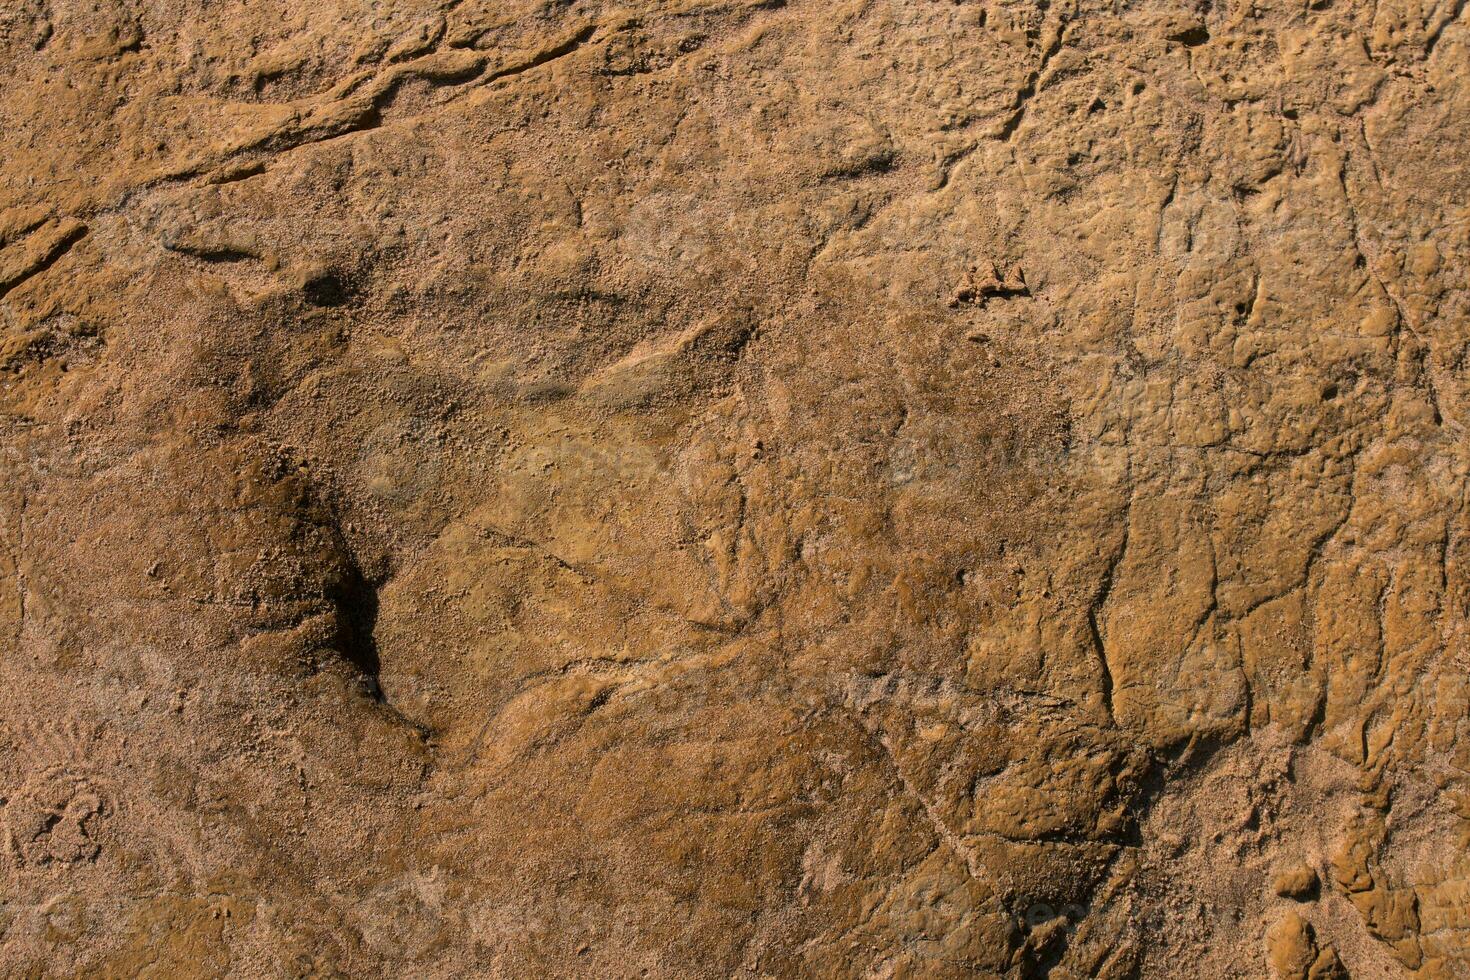 dinosaurus voetafdrukken Aan steen foto